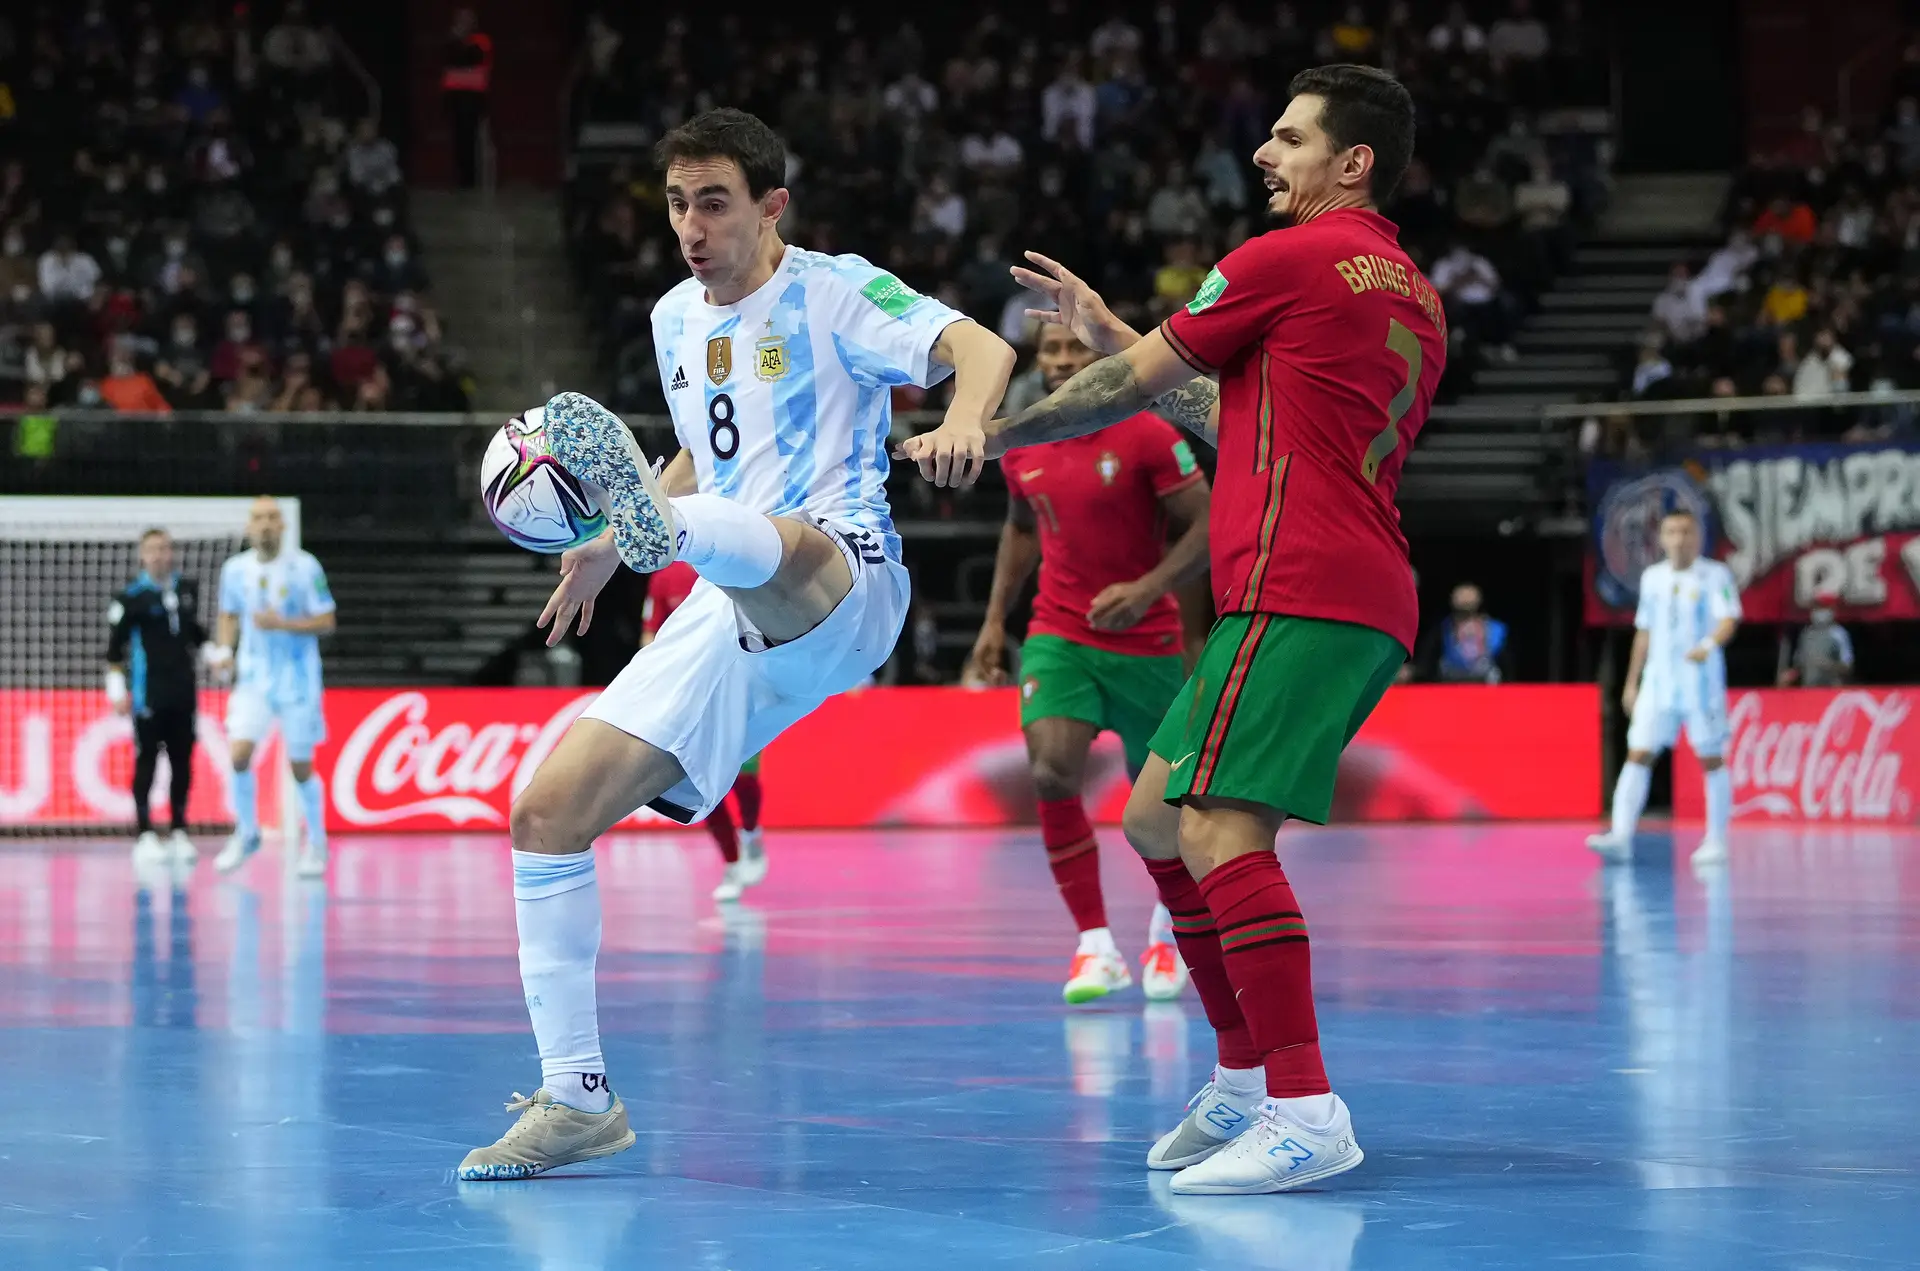 Portugal é campeão mundial: no futsal são elas que mandam